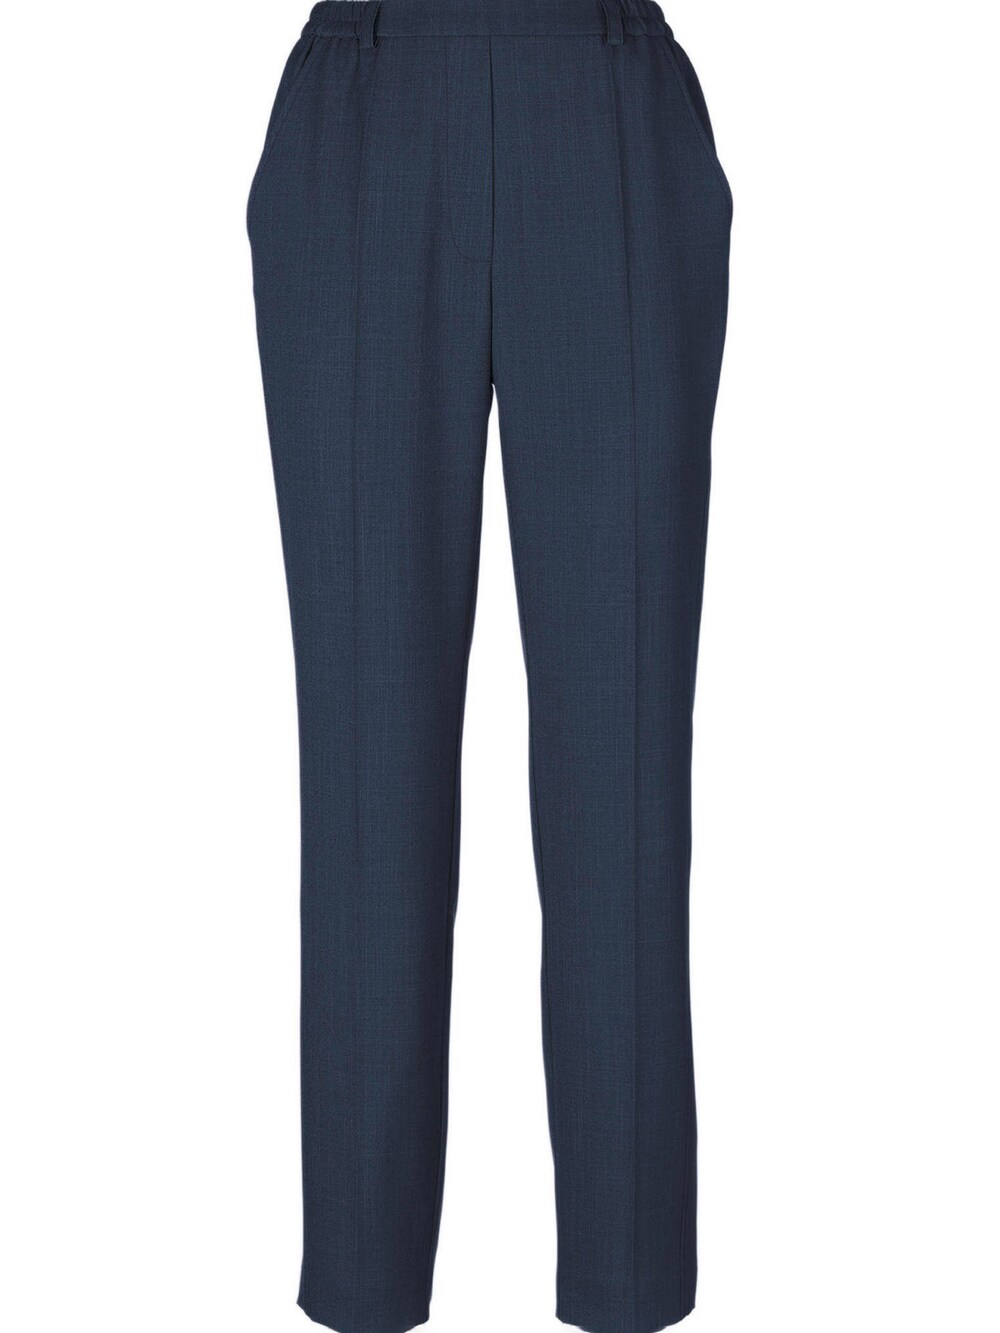 Обычные плиссированные брюки Goldner Martha, темно-синий